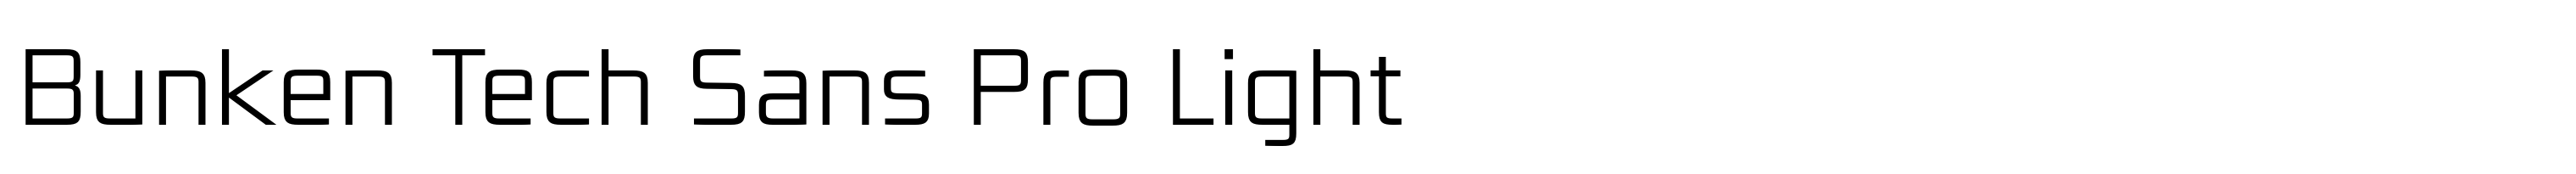 Bunken Tech Sans Pro Light